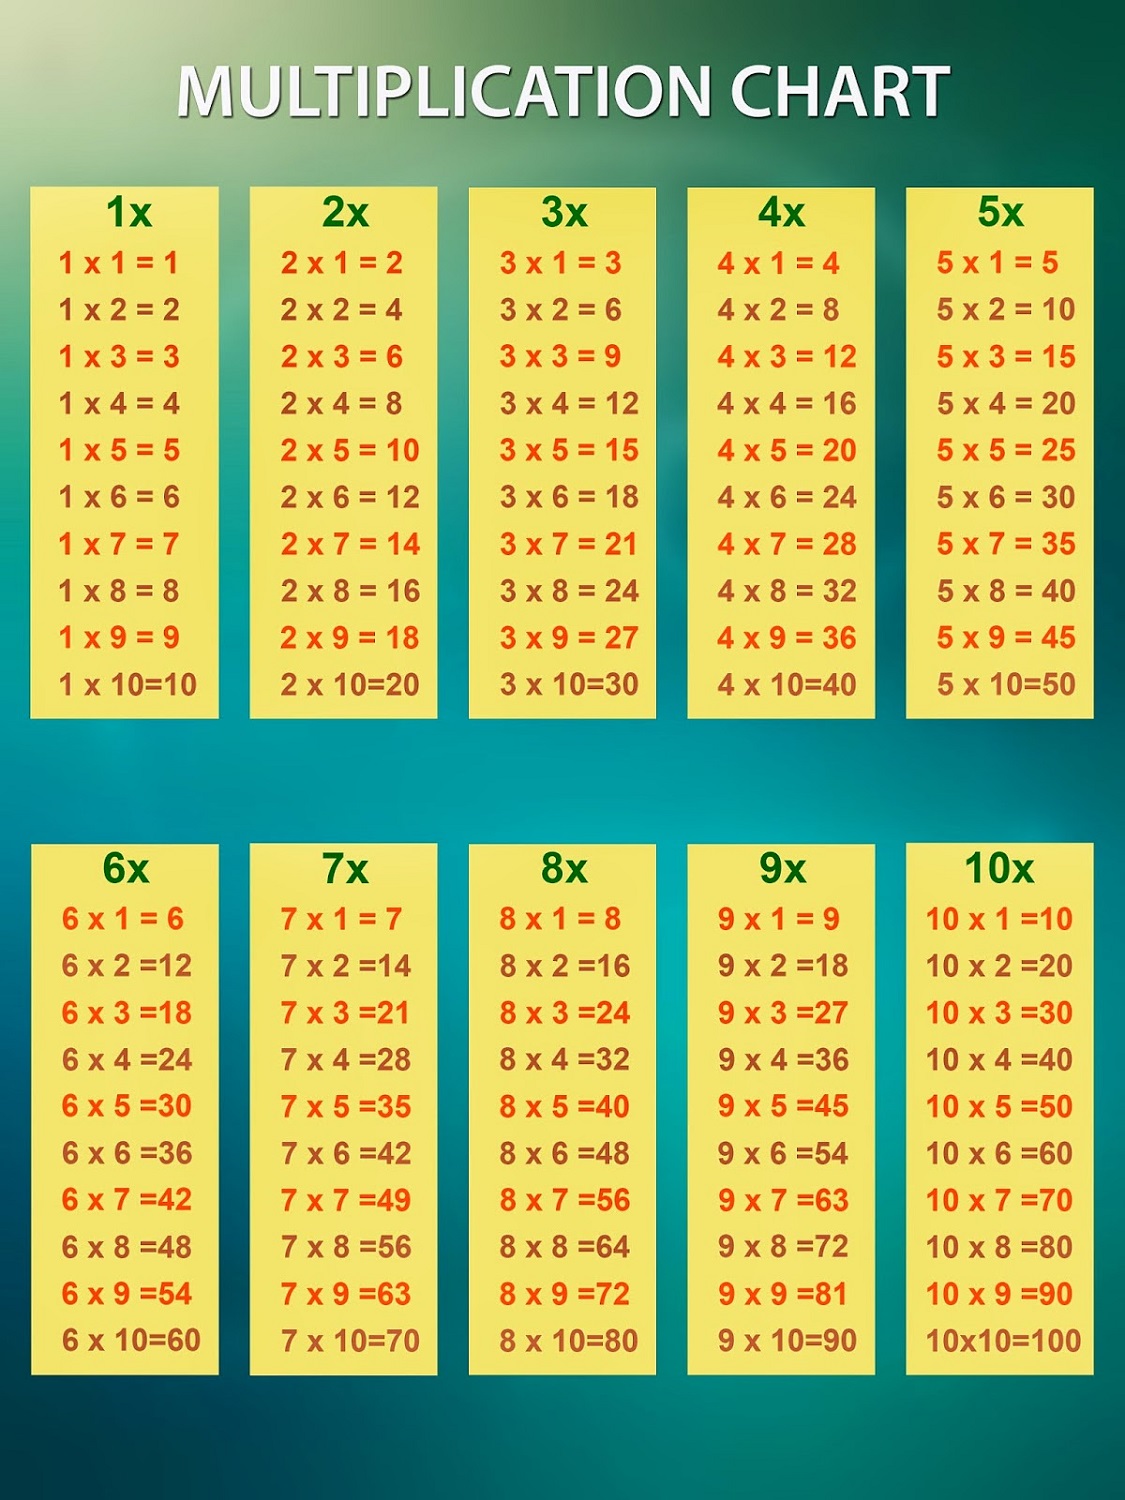 Times Tables Printable Chart Printable World Holiday